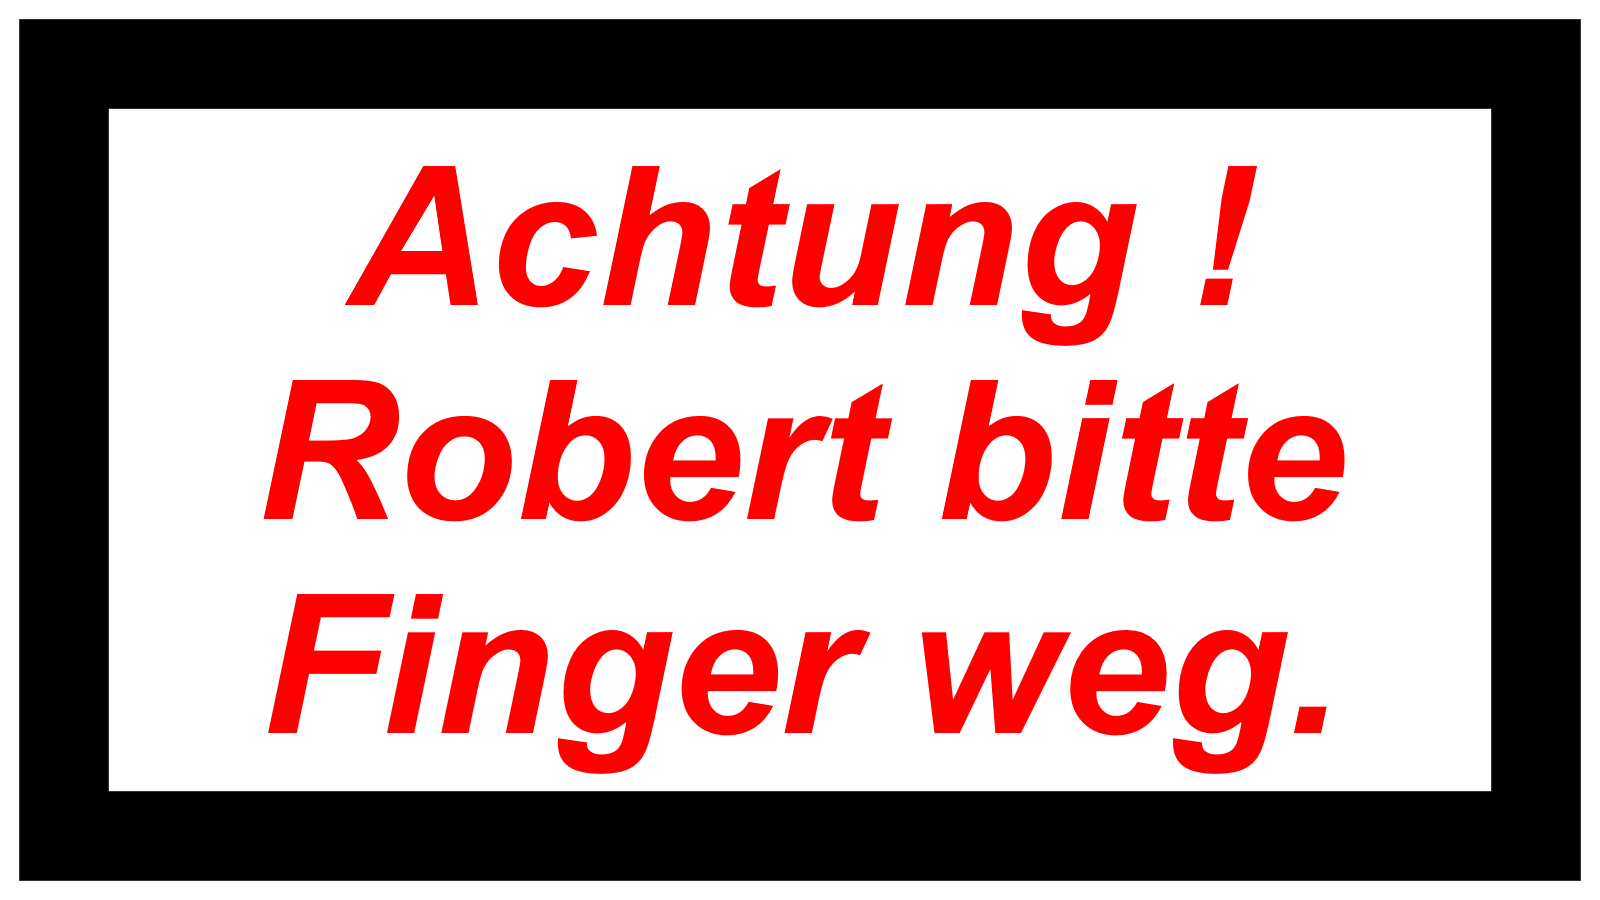 Achtung !   Robert bitte Finger weg.